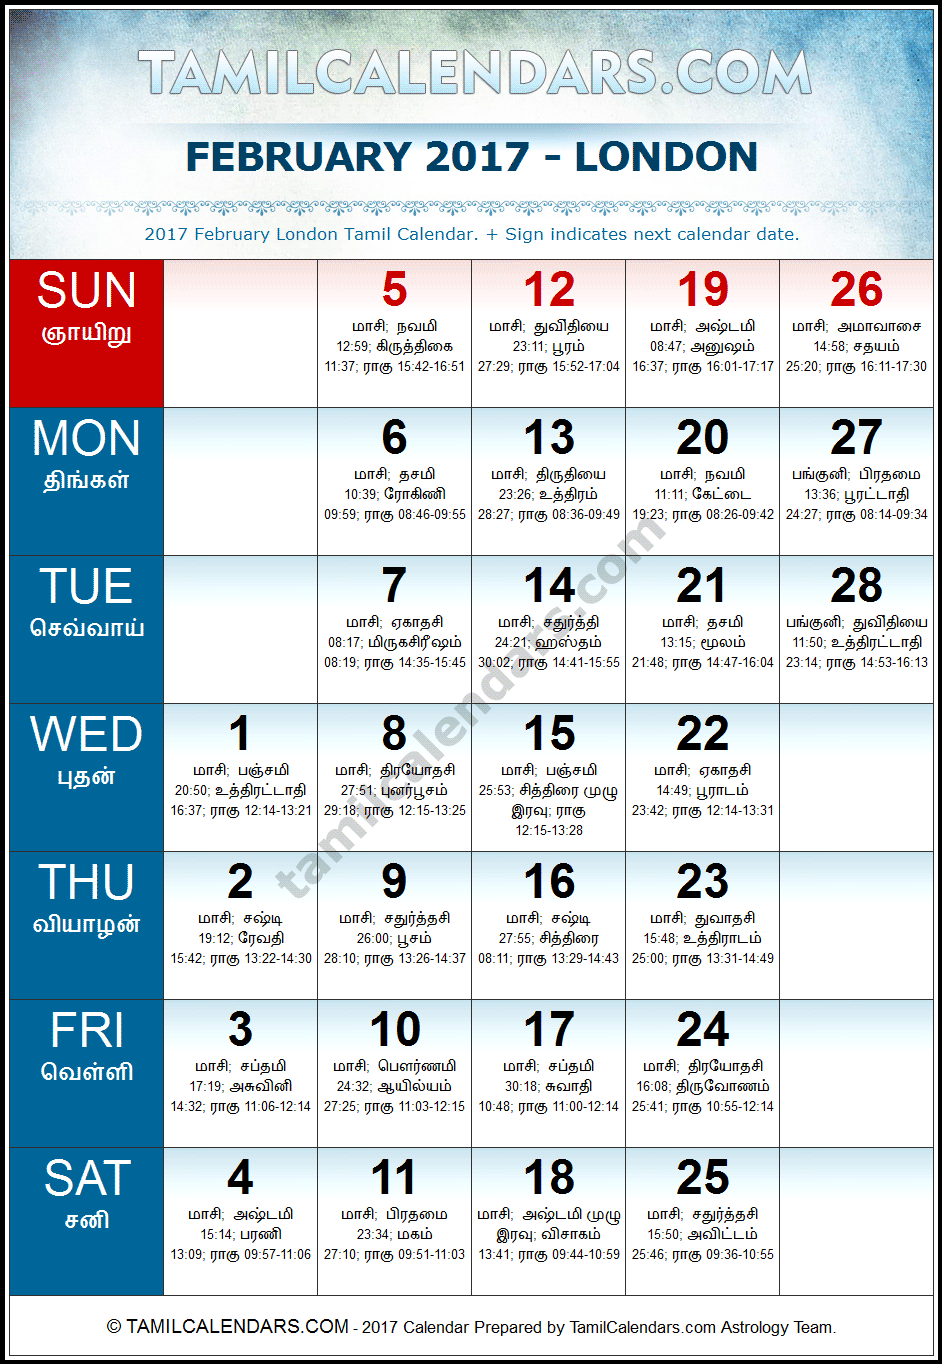 February 2017 Tamil Calendar for London, UK